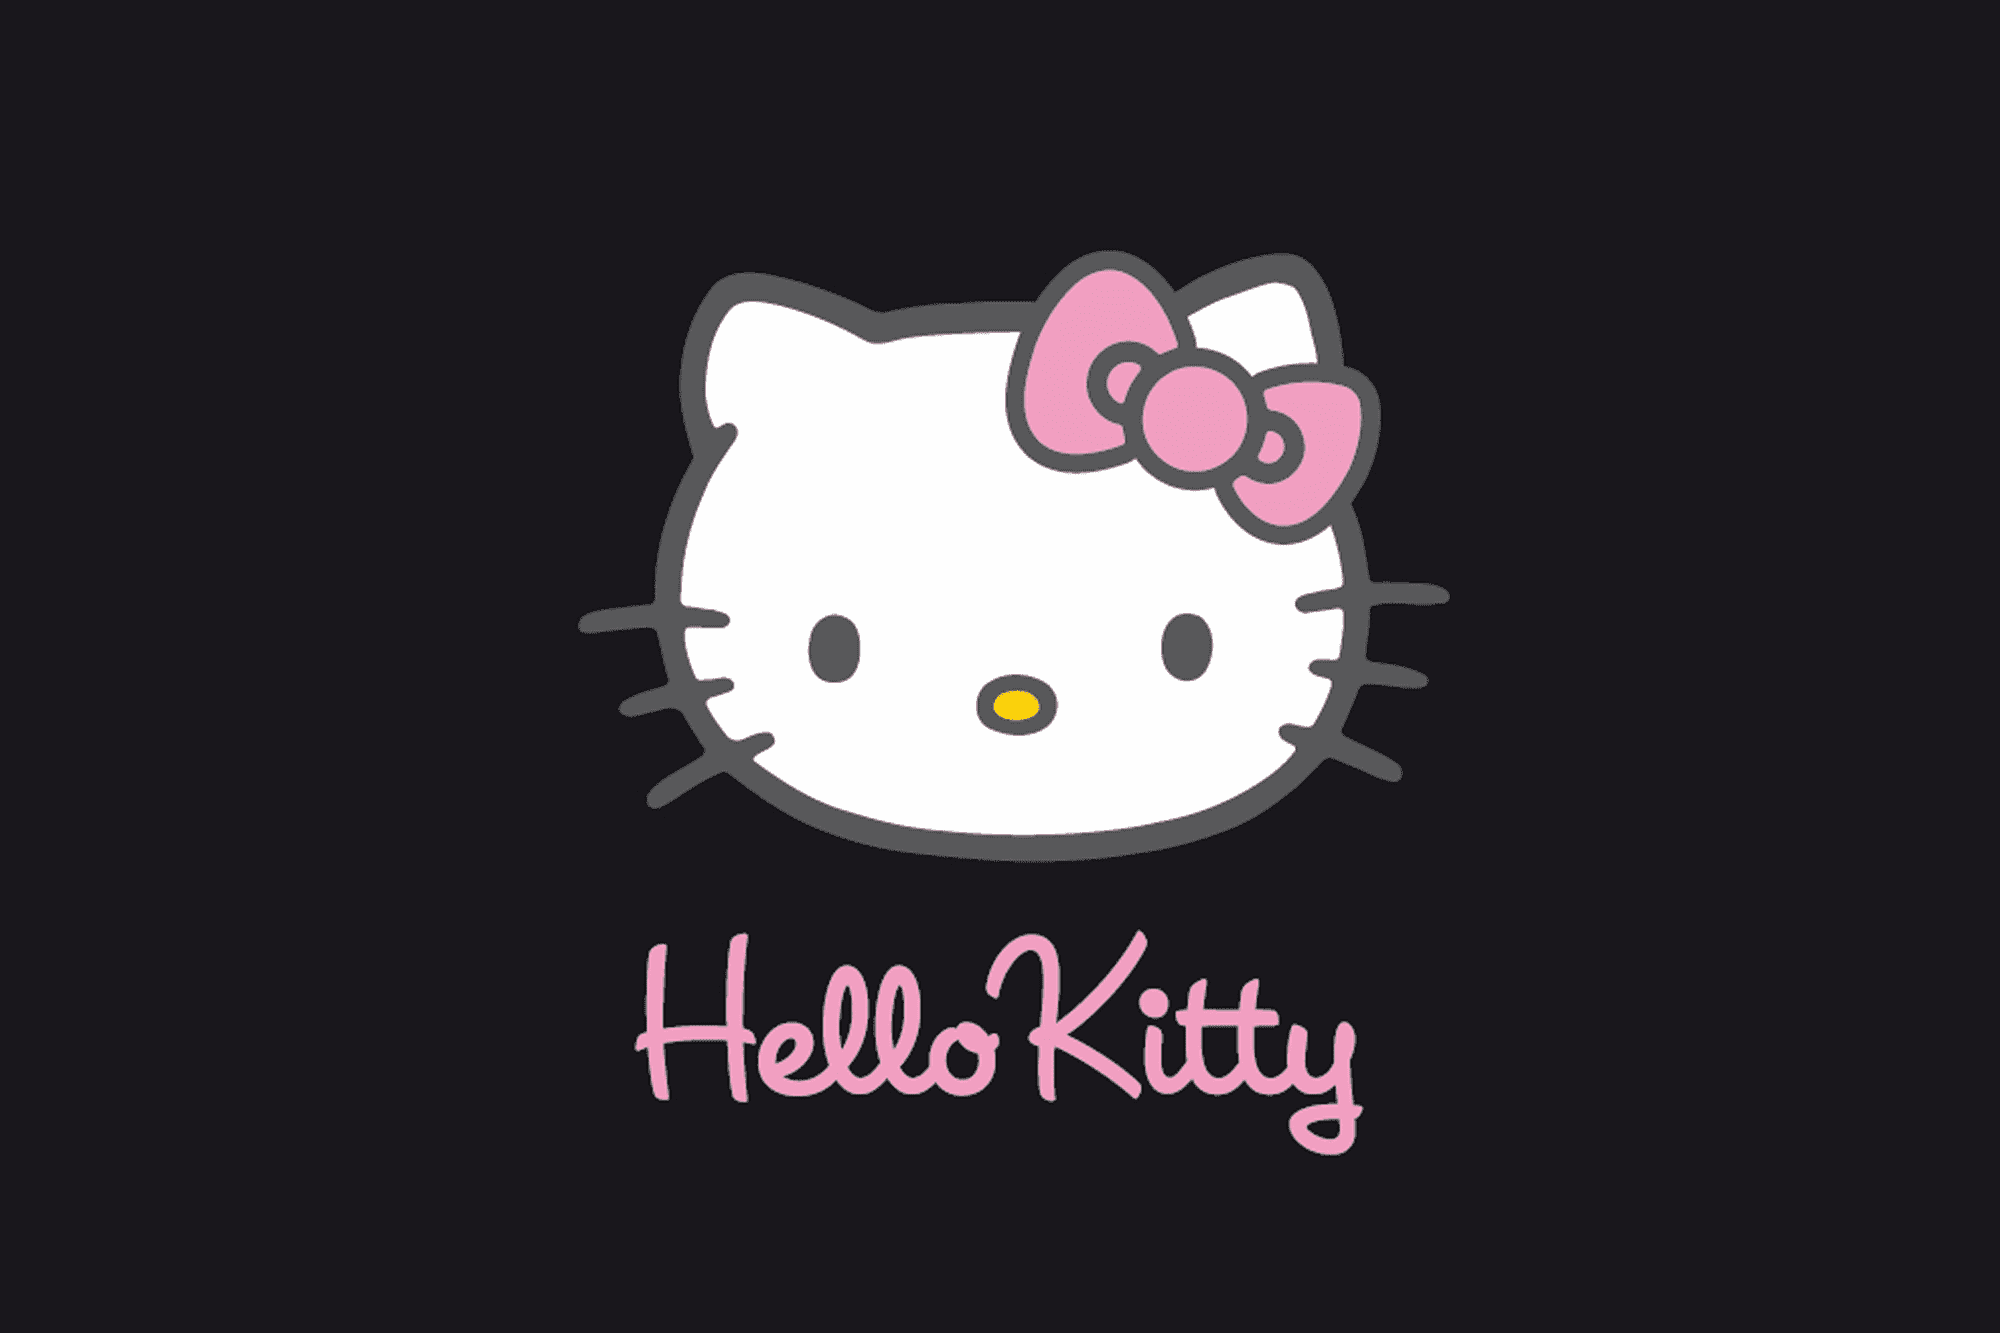 bonjour kitty fond d'écran gratuit,texte,rose,blanc,dessin animé,police de caractère